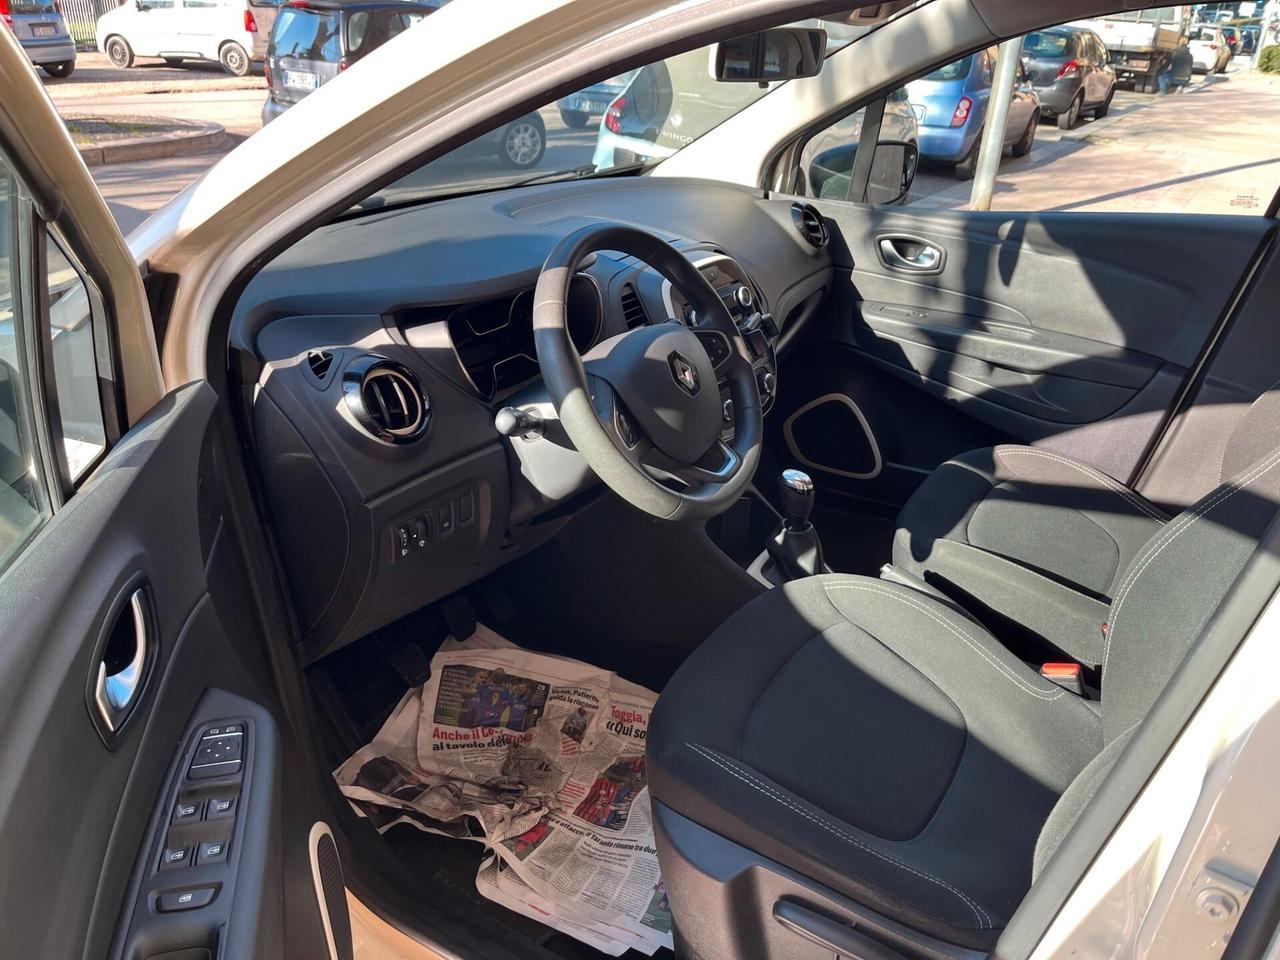 Renault Captur 1.5dCi 90CV perfetta garantita-2018